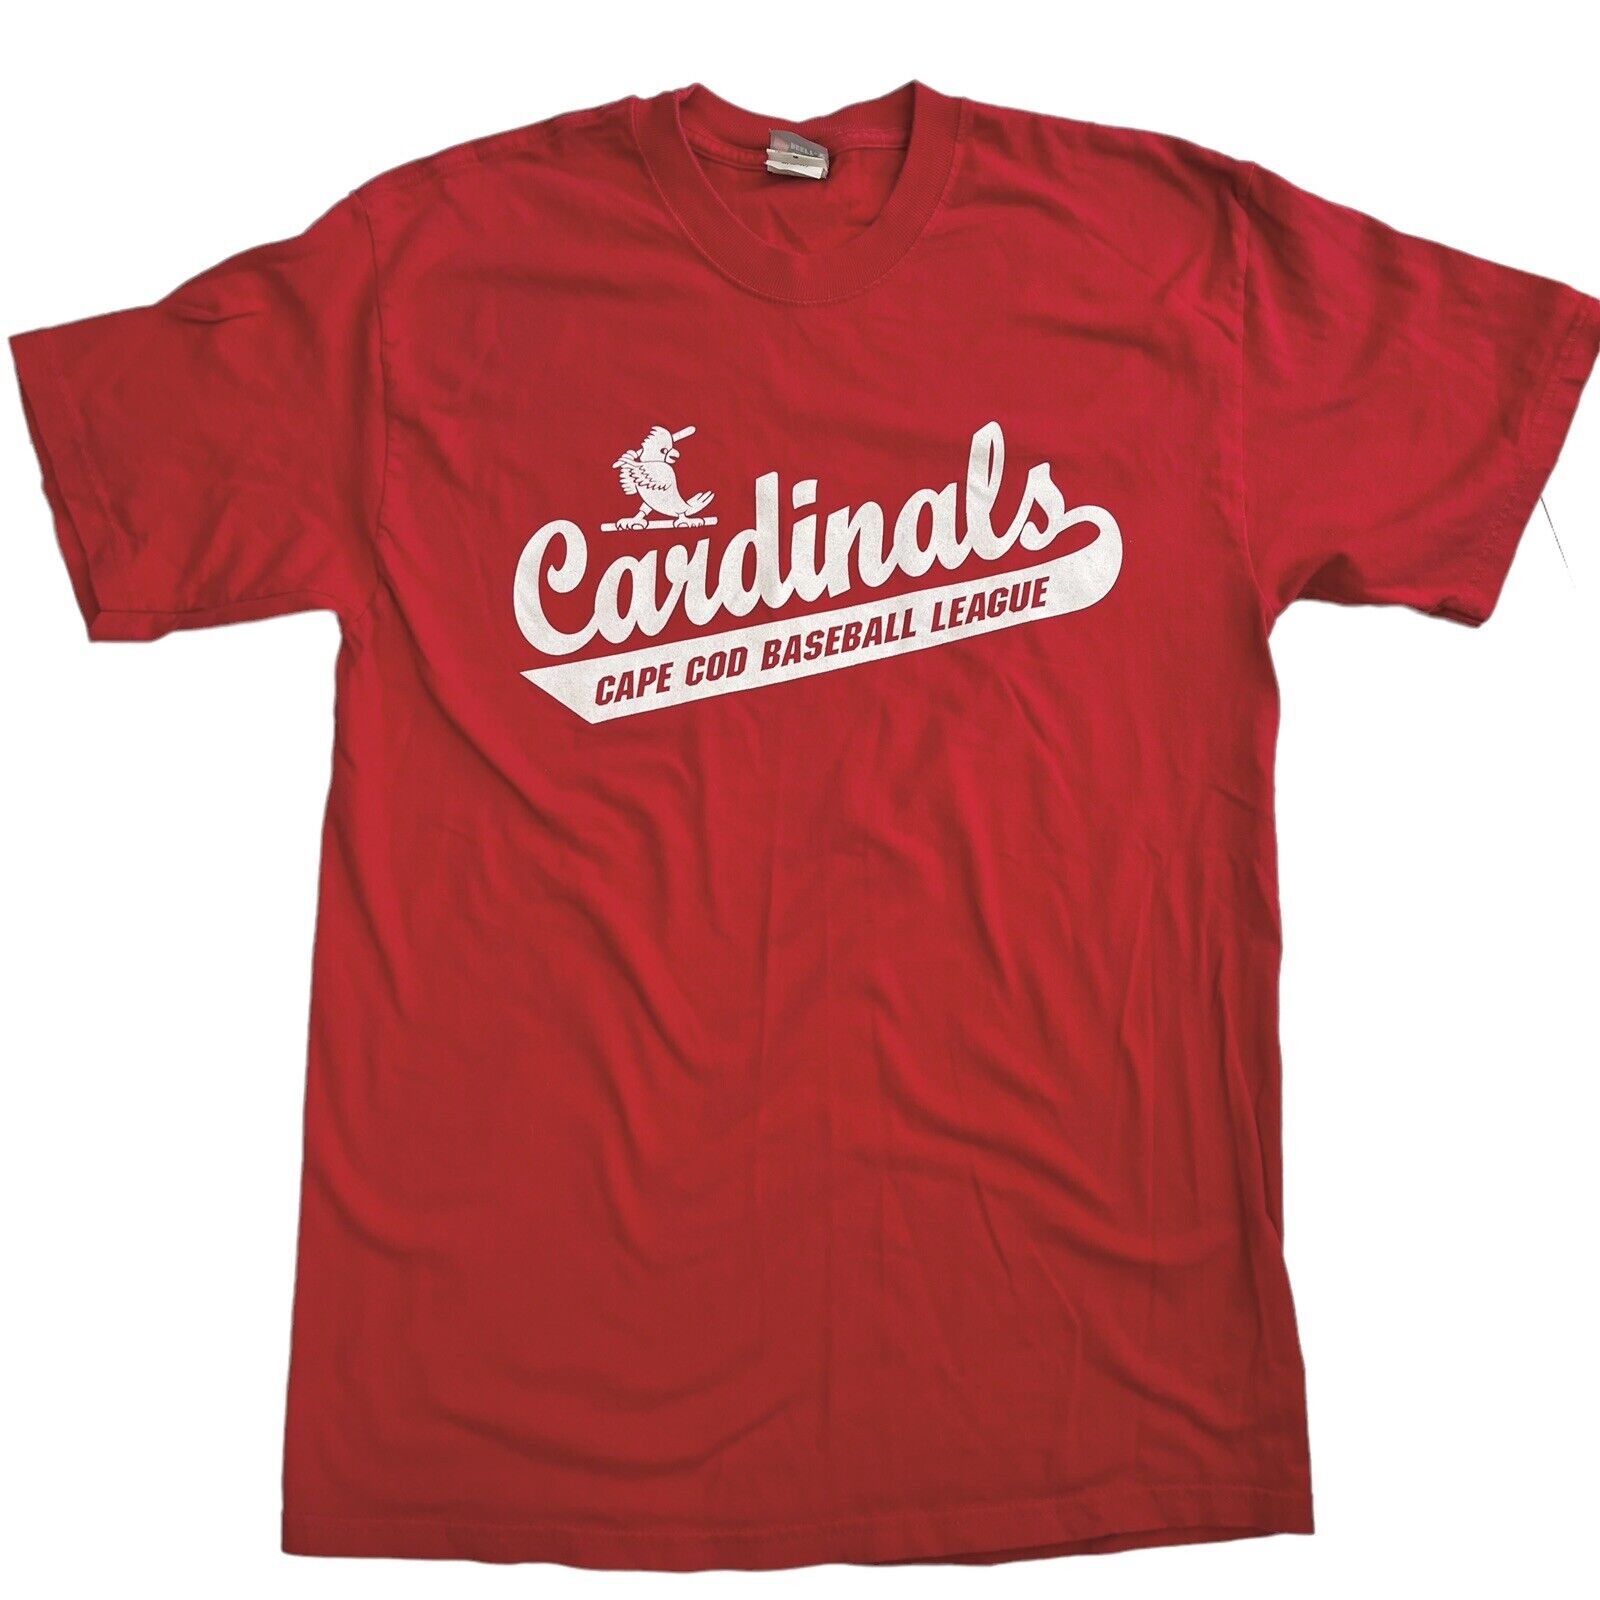 Orleans Cardinals Cape Cod Baseball League T Shirt /vintage/ccbl/firebirds/mass